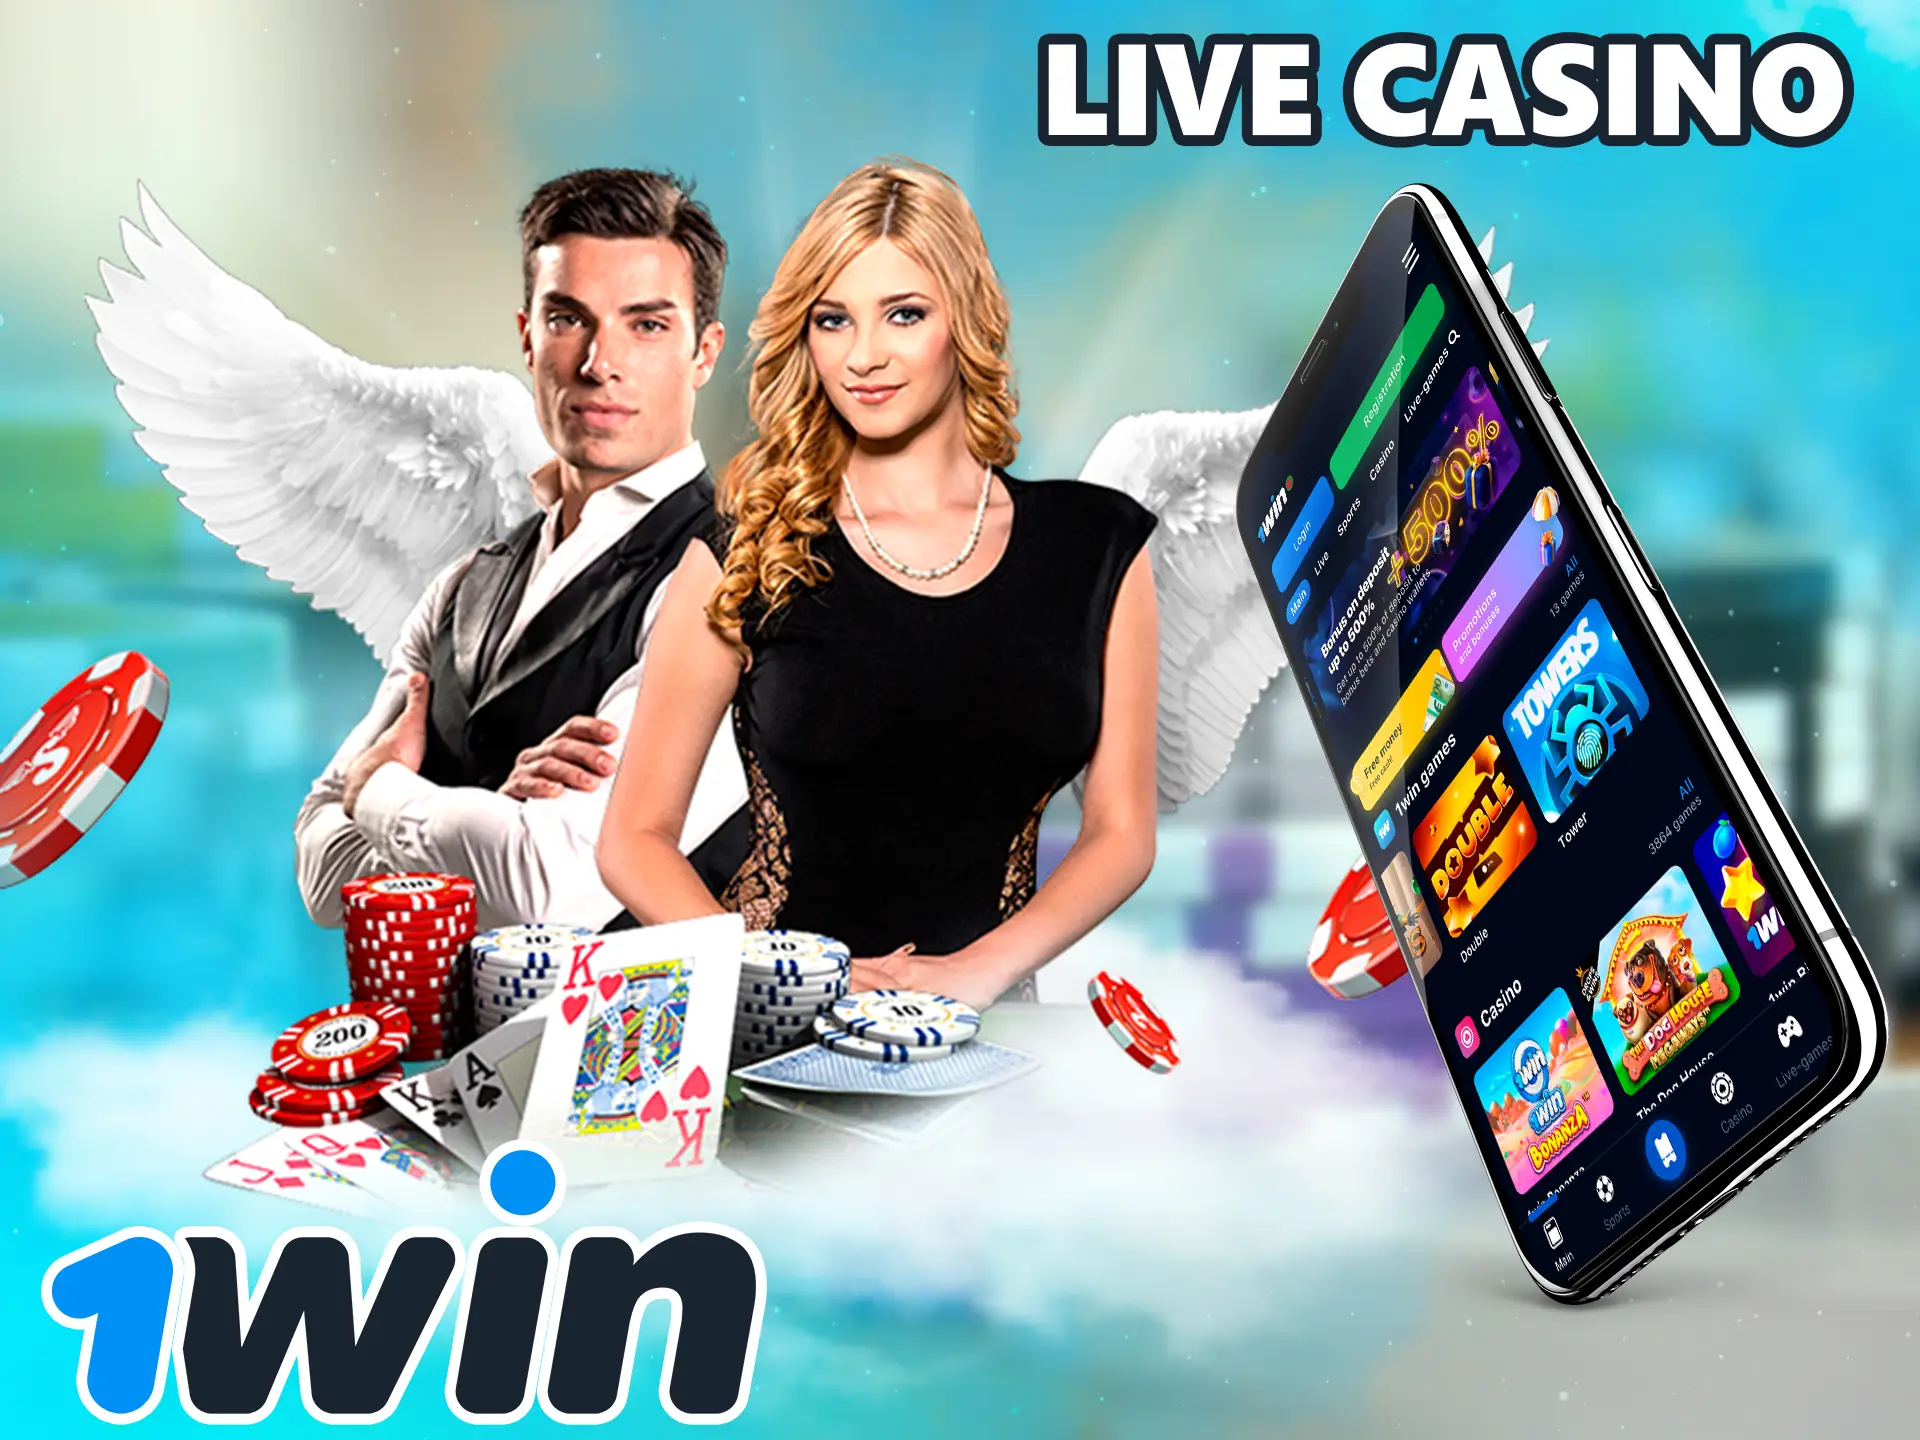 1Win Live Casino